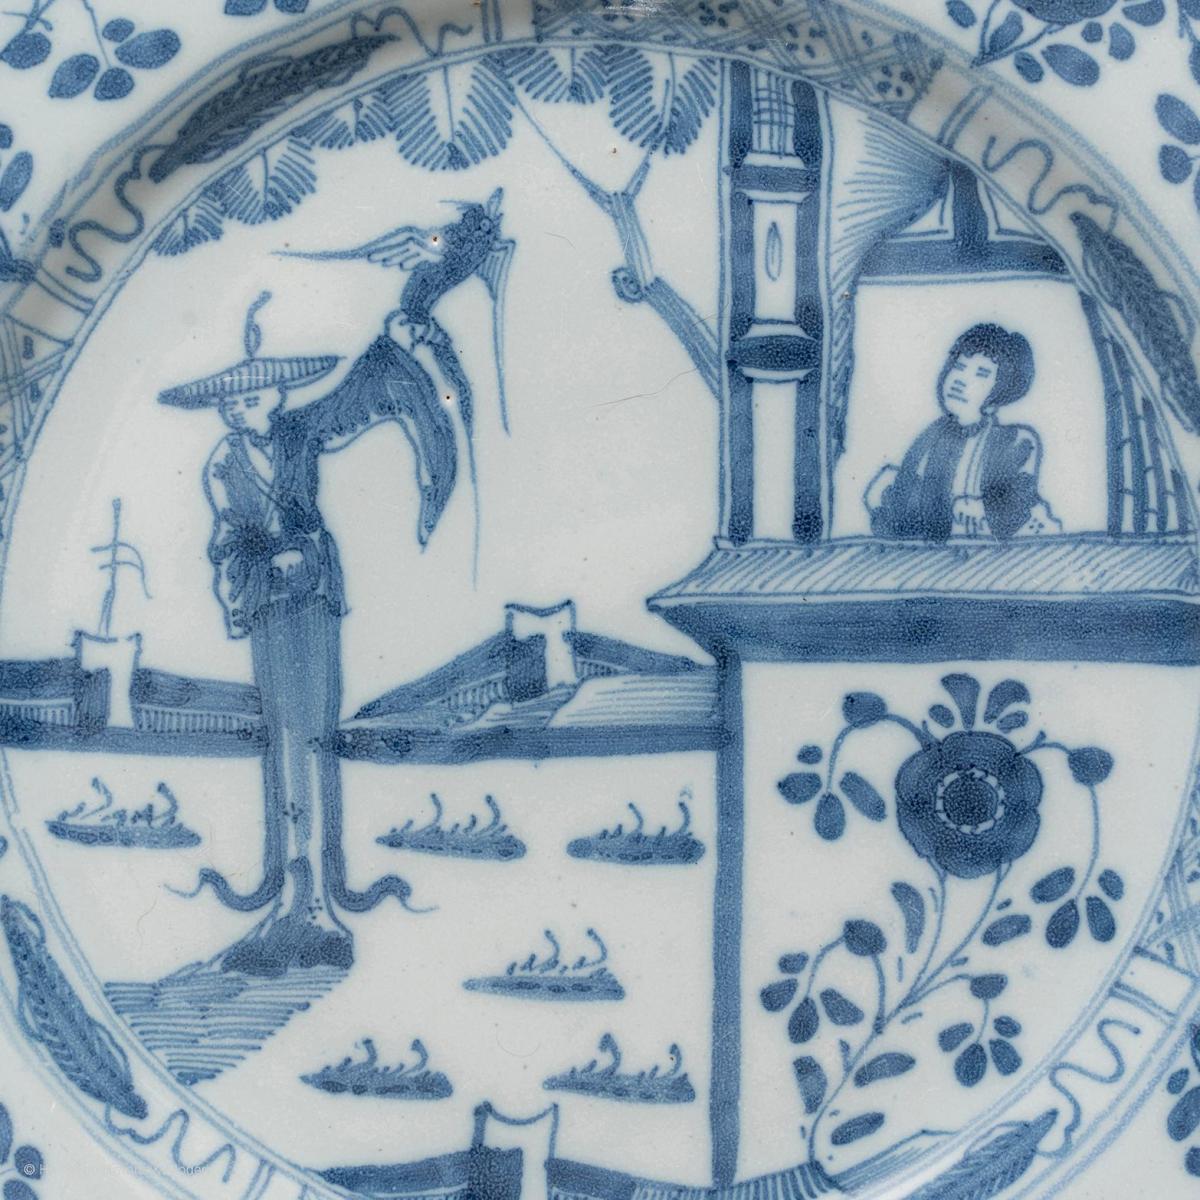 Liverpool Delftware Plates, circa 1760